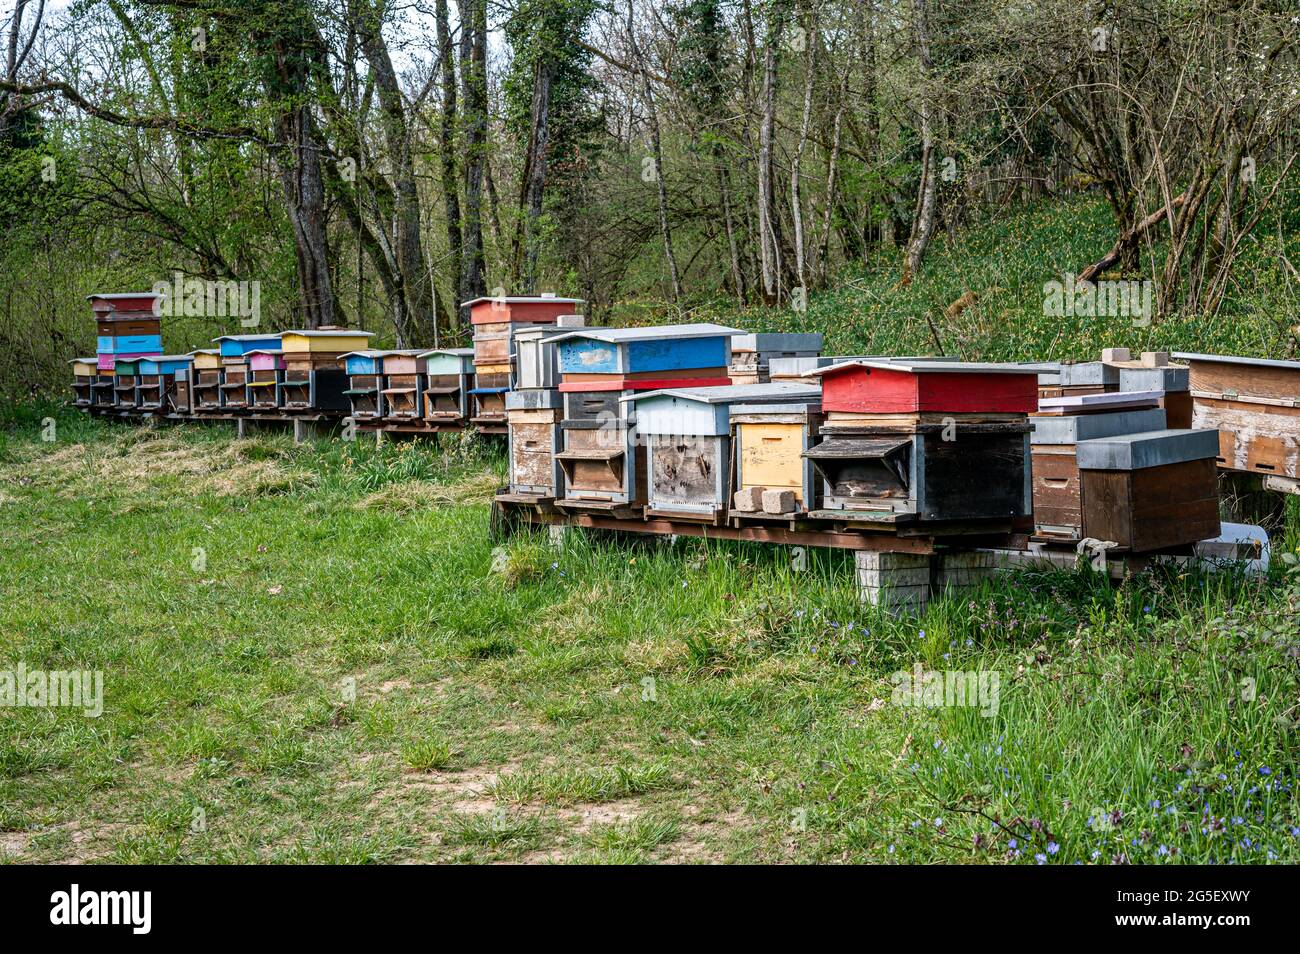 Bienenstöcke im Bienenhaus. Bemalte Bienenstöcke aus Holz mit aktiven  Honigbienen. Bienenhof in der Schweiz. Biodiversitäts- und Ökologie-Konzept  Stockfotografie - Alamy